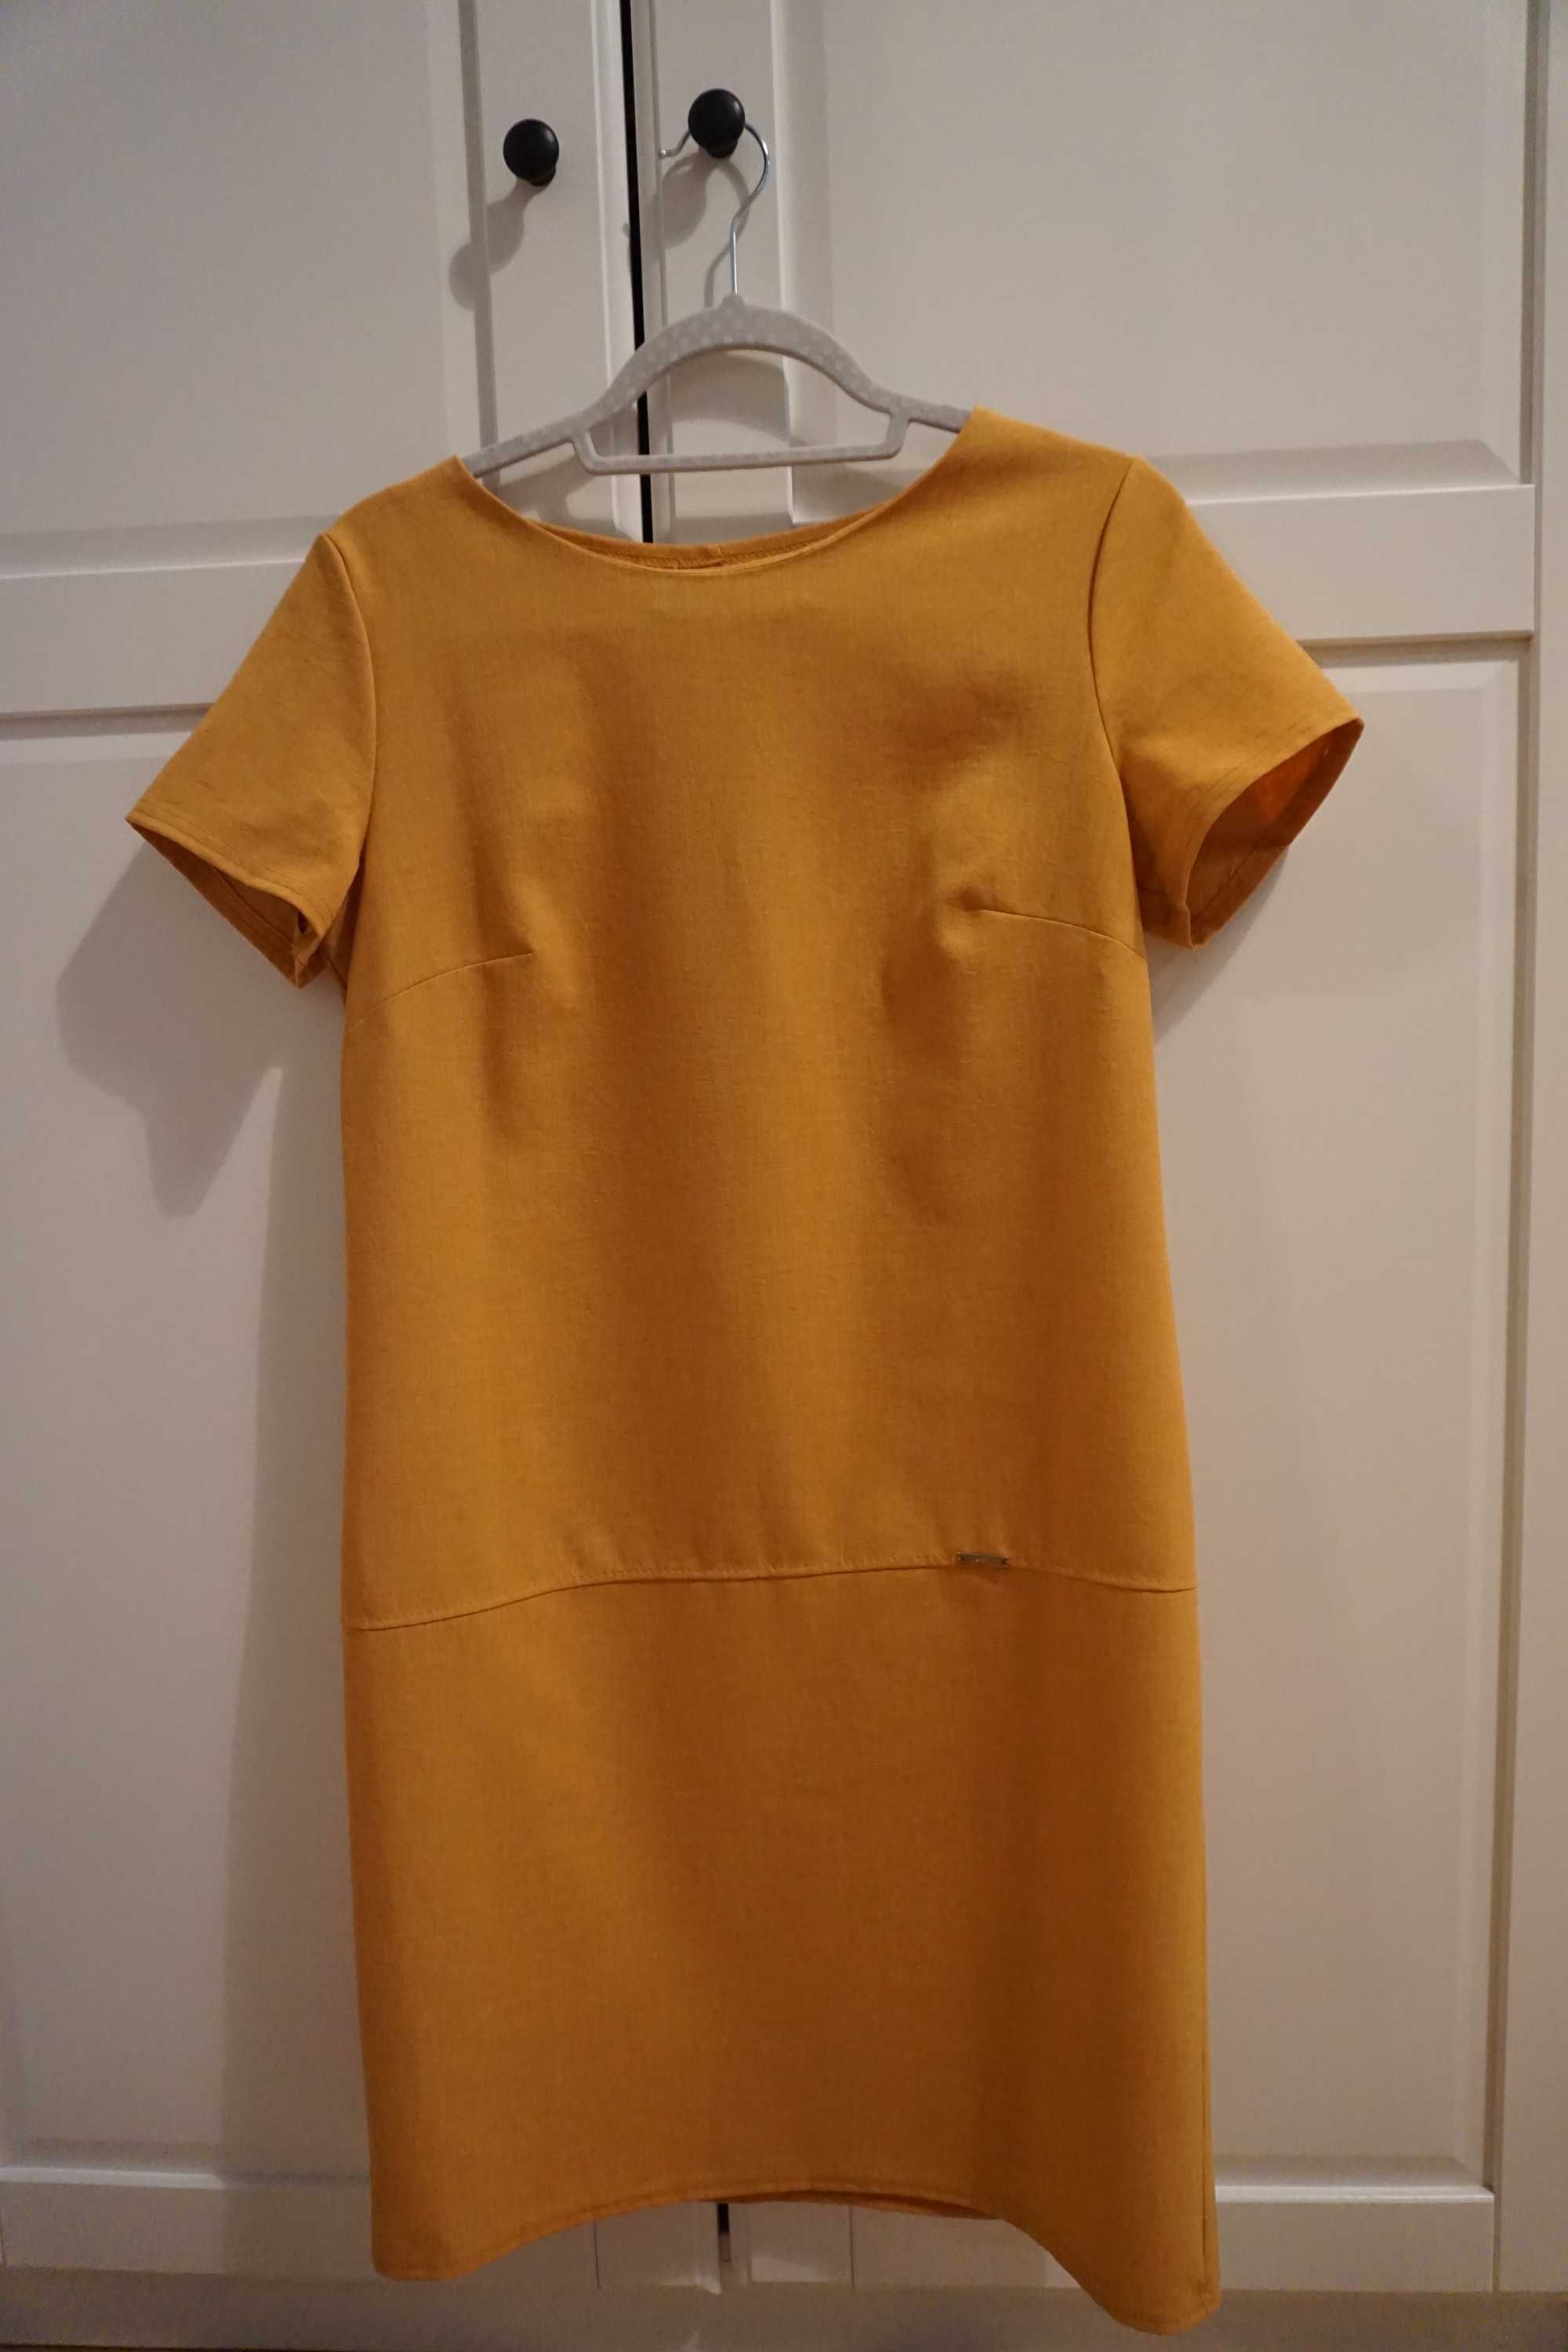 sukienka/ tunika w kolorze musztardowym, rozm. 38 (L)